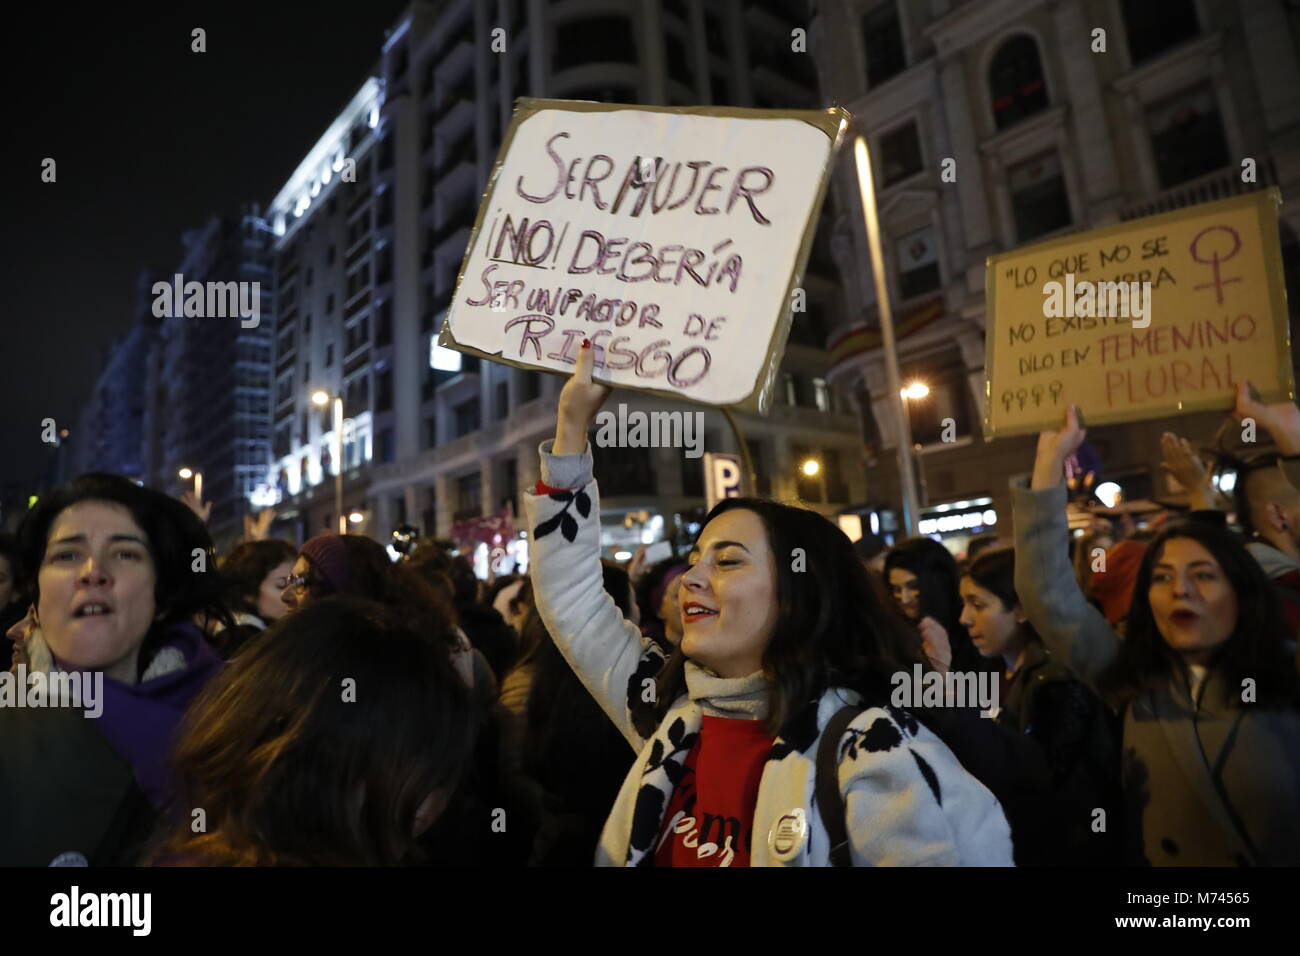 Spanische Frauen während einer Versammlung der Internationale Tag der Frau in Puerta del Sol in Madrid, Madrid zu Feiern, am Donnerstag, den 8. März 2018. Credit: Gtres Información más Comuniación auf Linie, S.L./Alamy leben Nachrichten Stockfoto